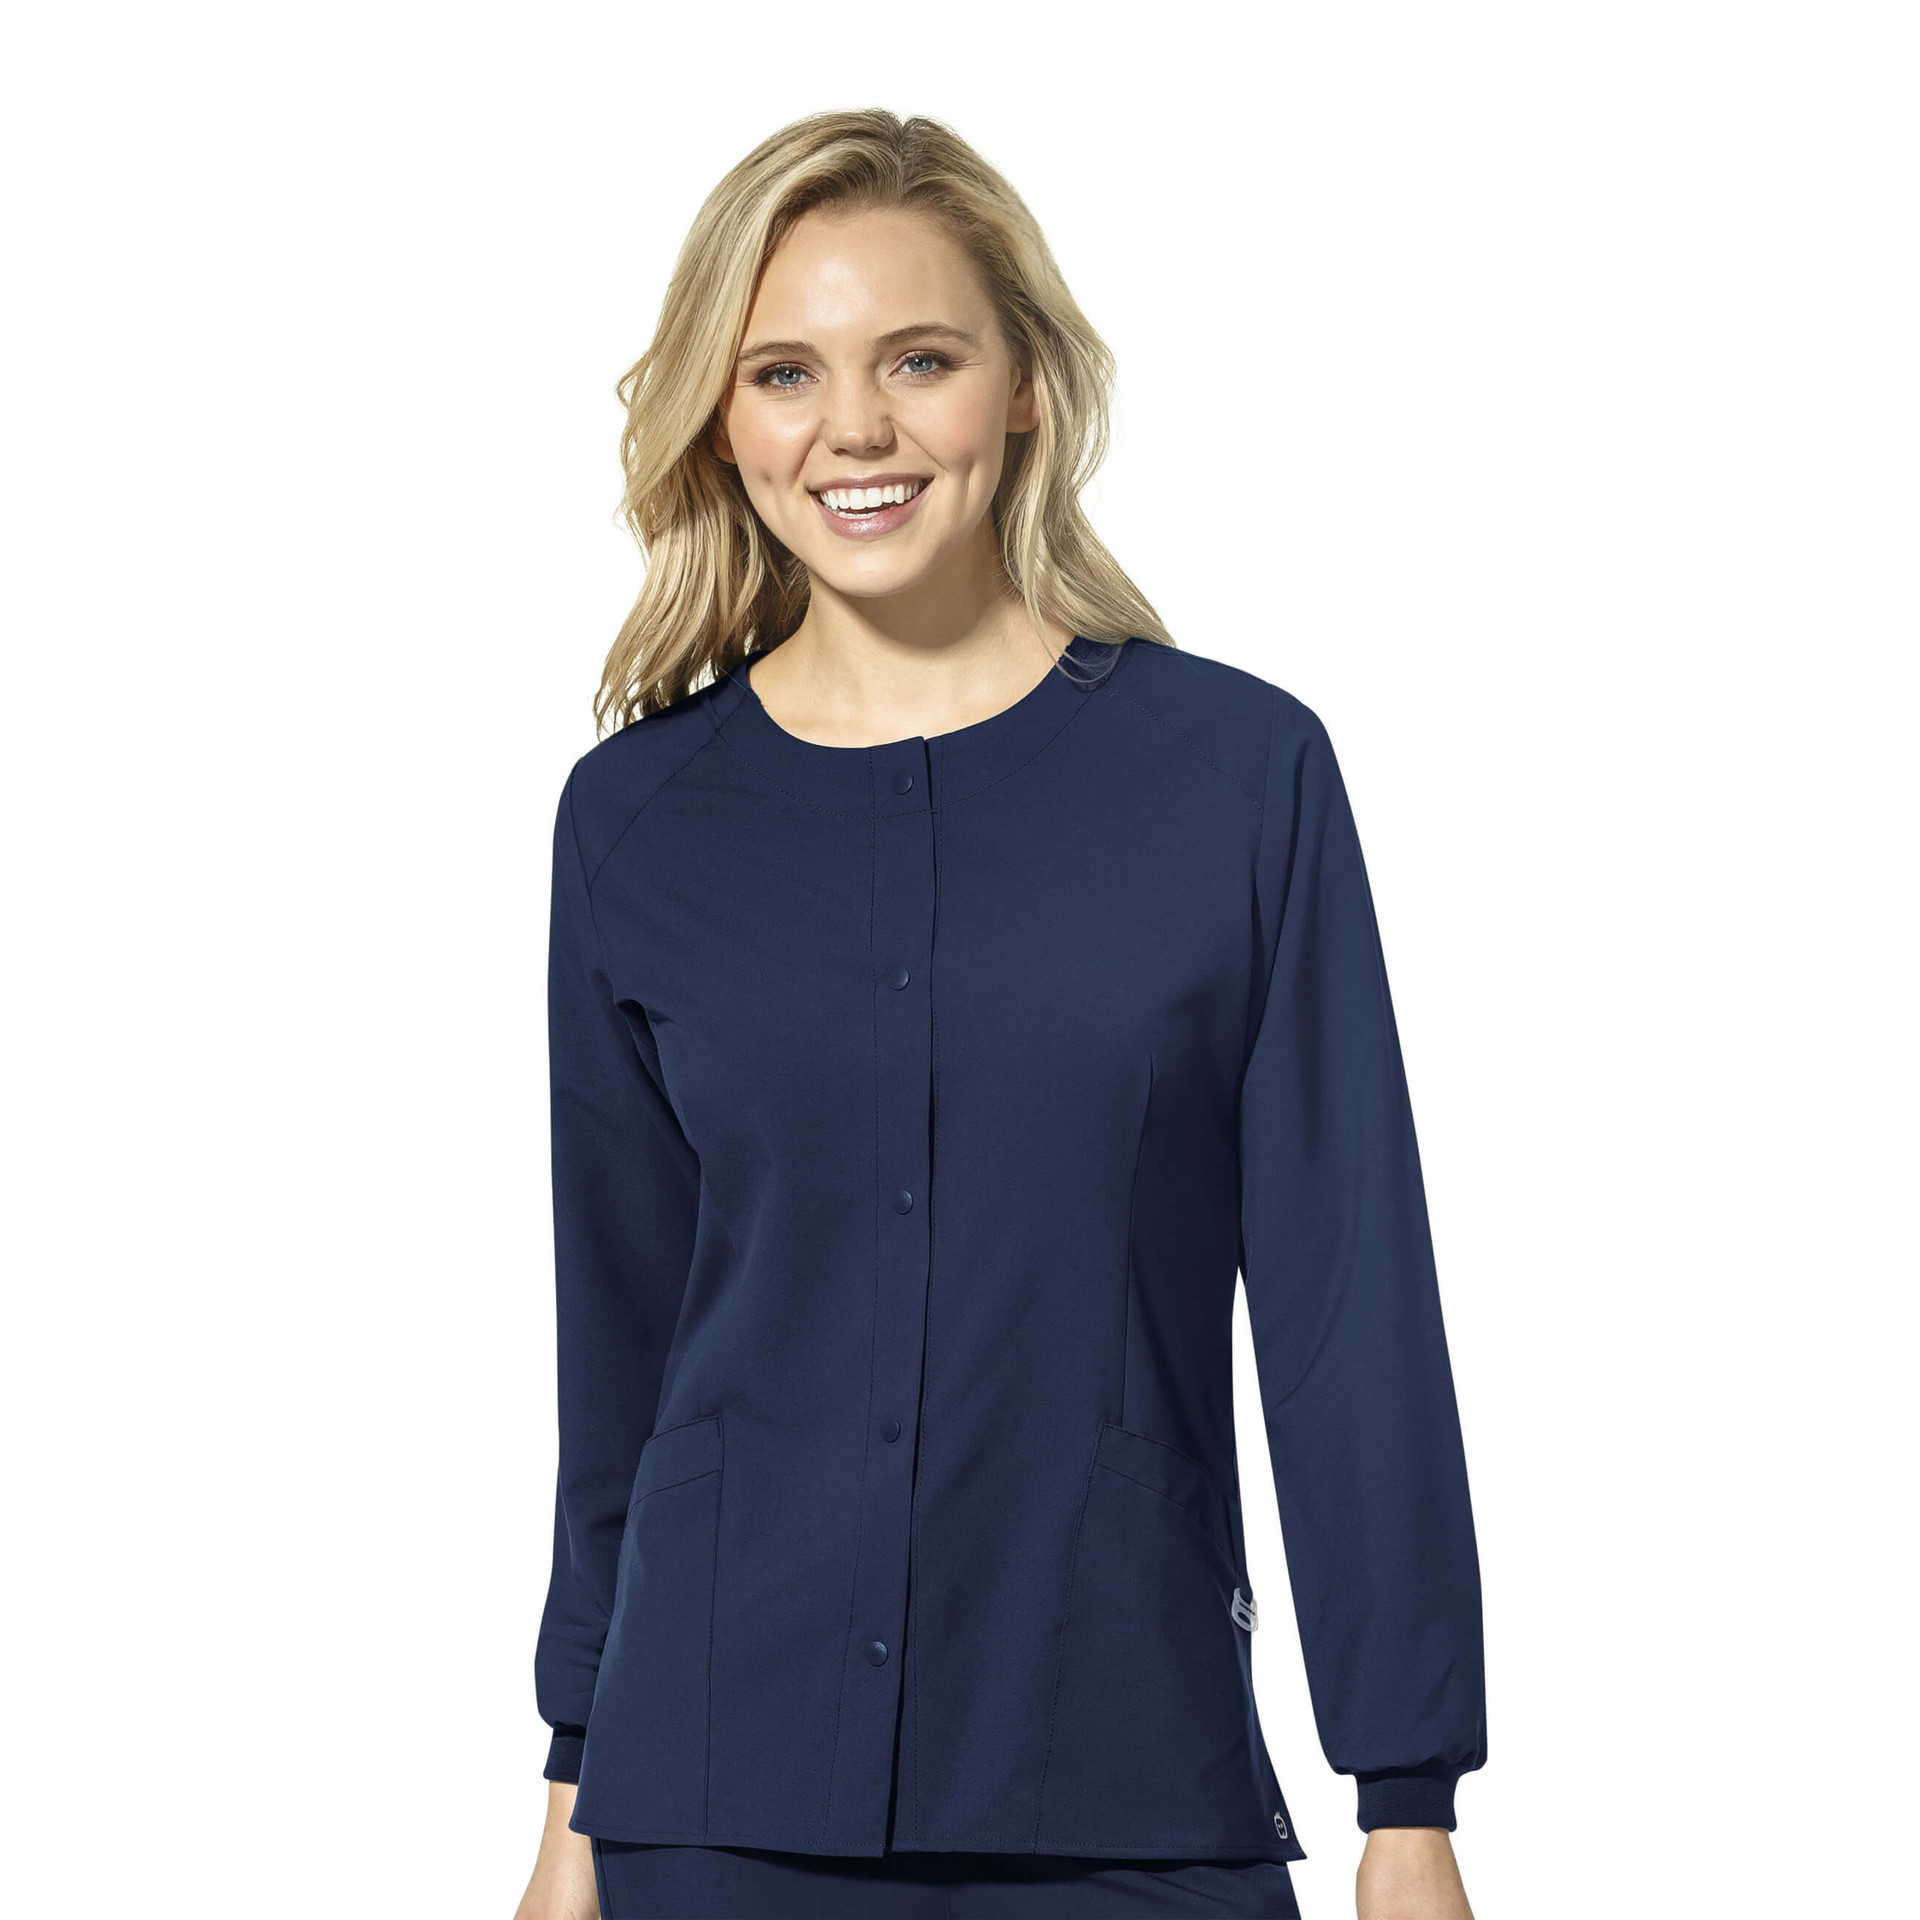 Women's Jackets & Coats | The Uniform Outlet